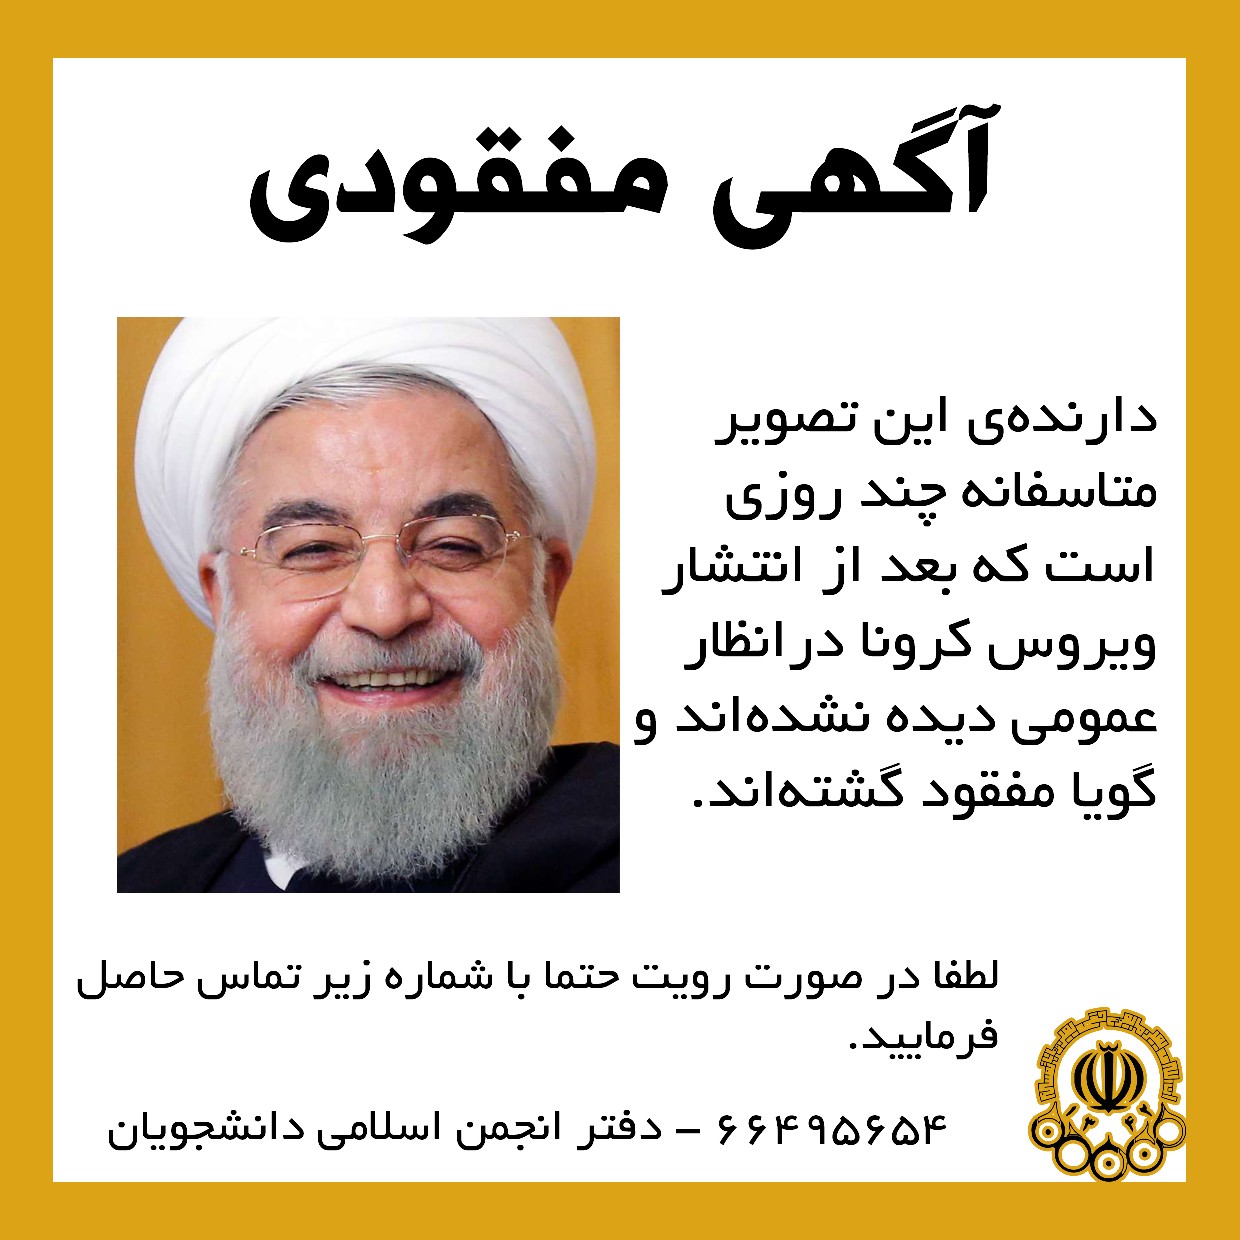 انجمن اسلامی دانشجویان دانشگاه امیرکبیر در اقدامی نمادین آگهی مفقود شدن رئیس جمهور را منتشر کرد